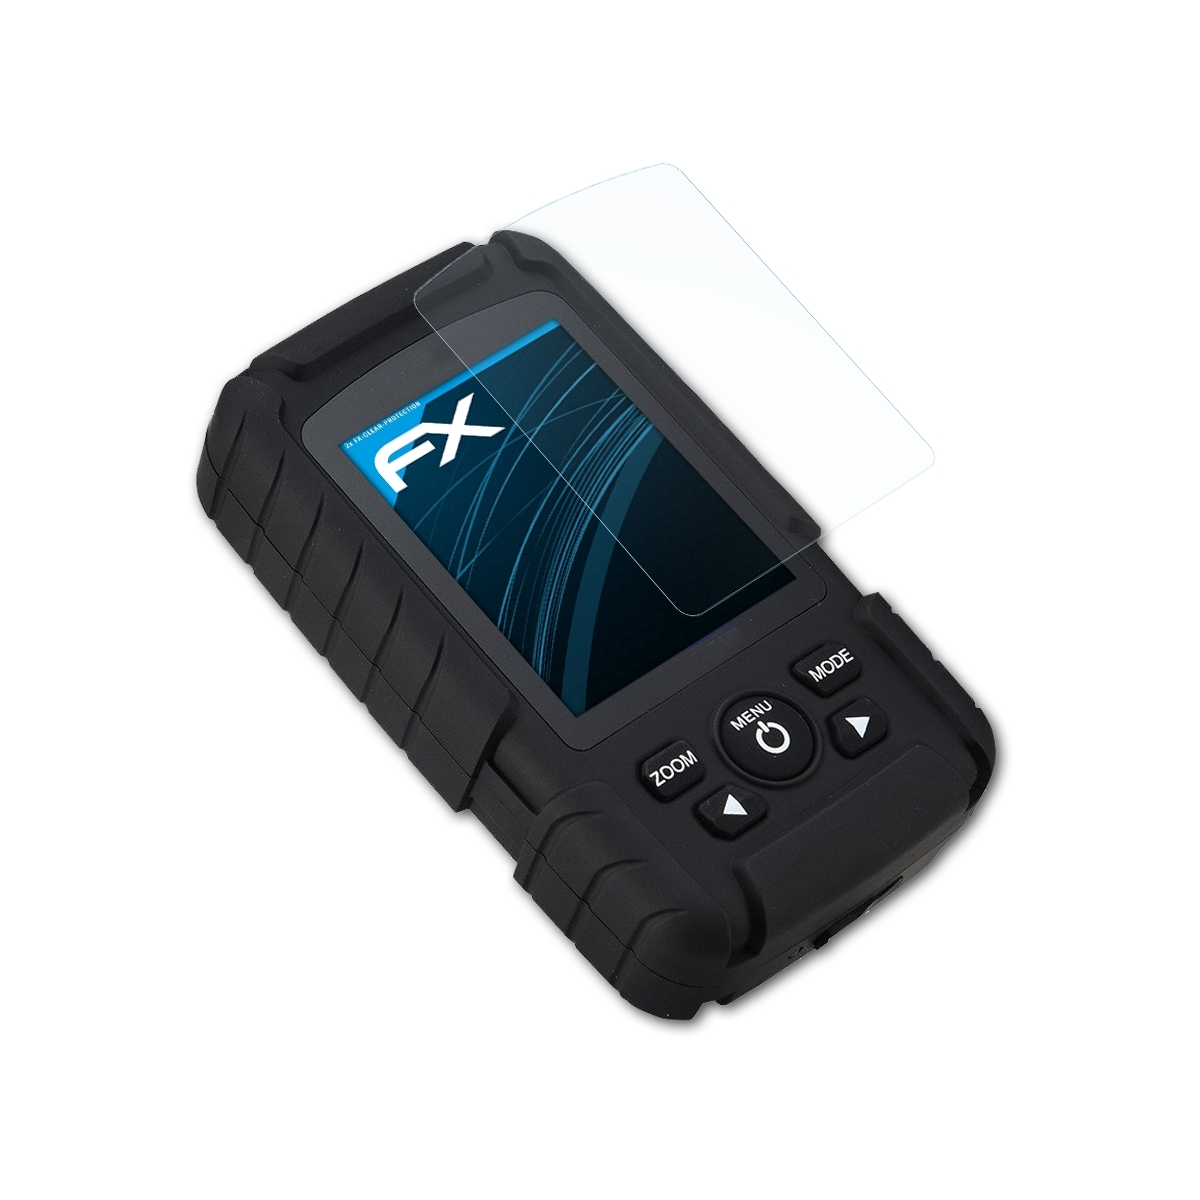 ATFOLIX 2x FX-Clear (FF718LiC)) Fishfinder Lucky Displayschutz(für